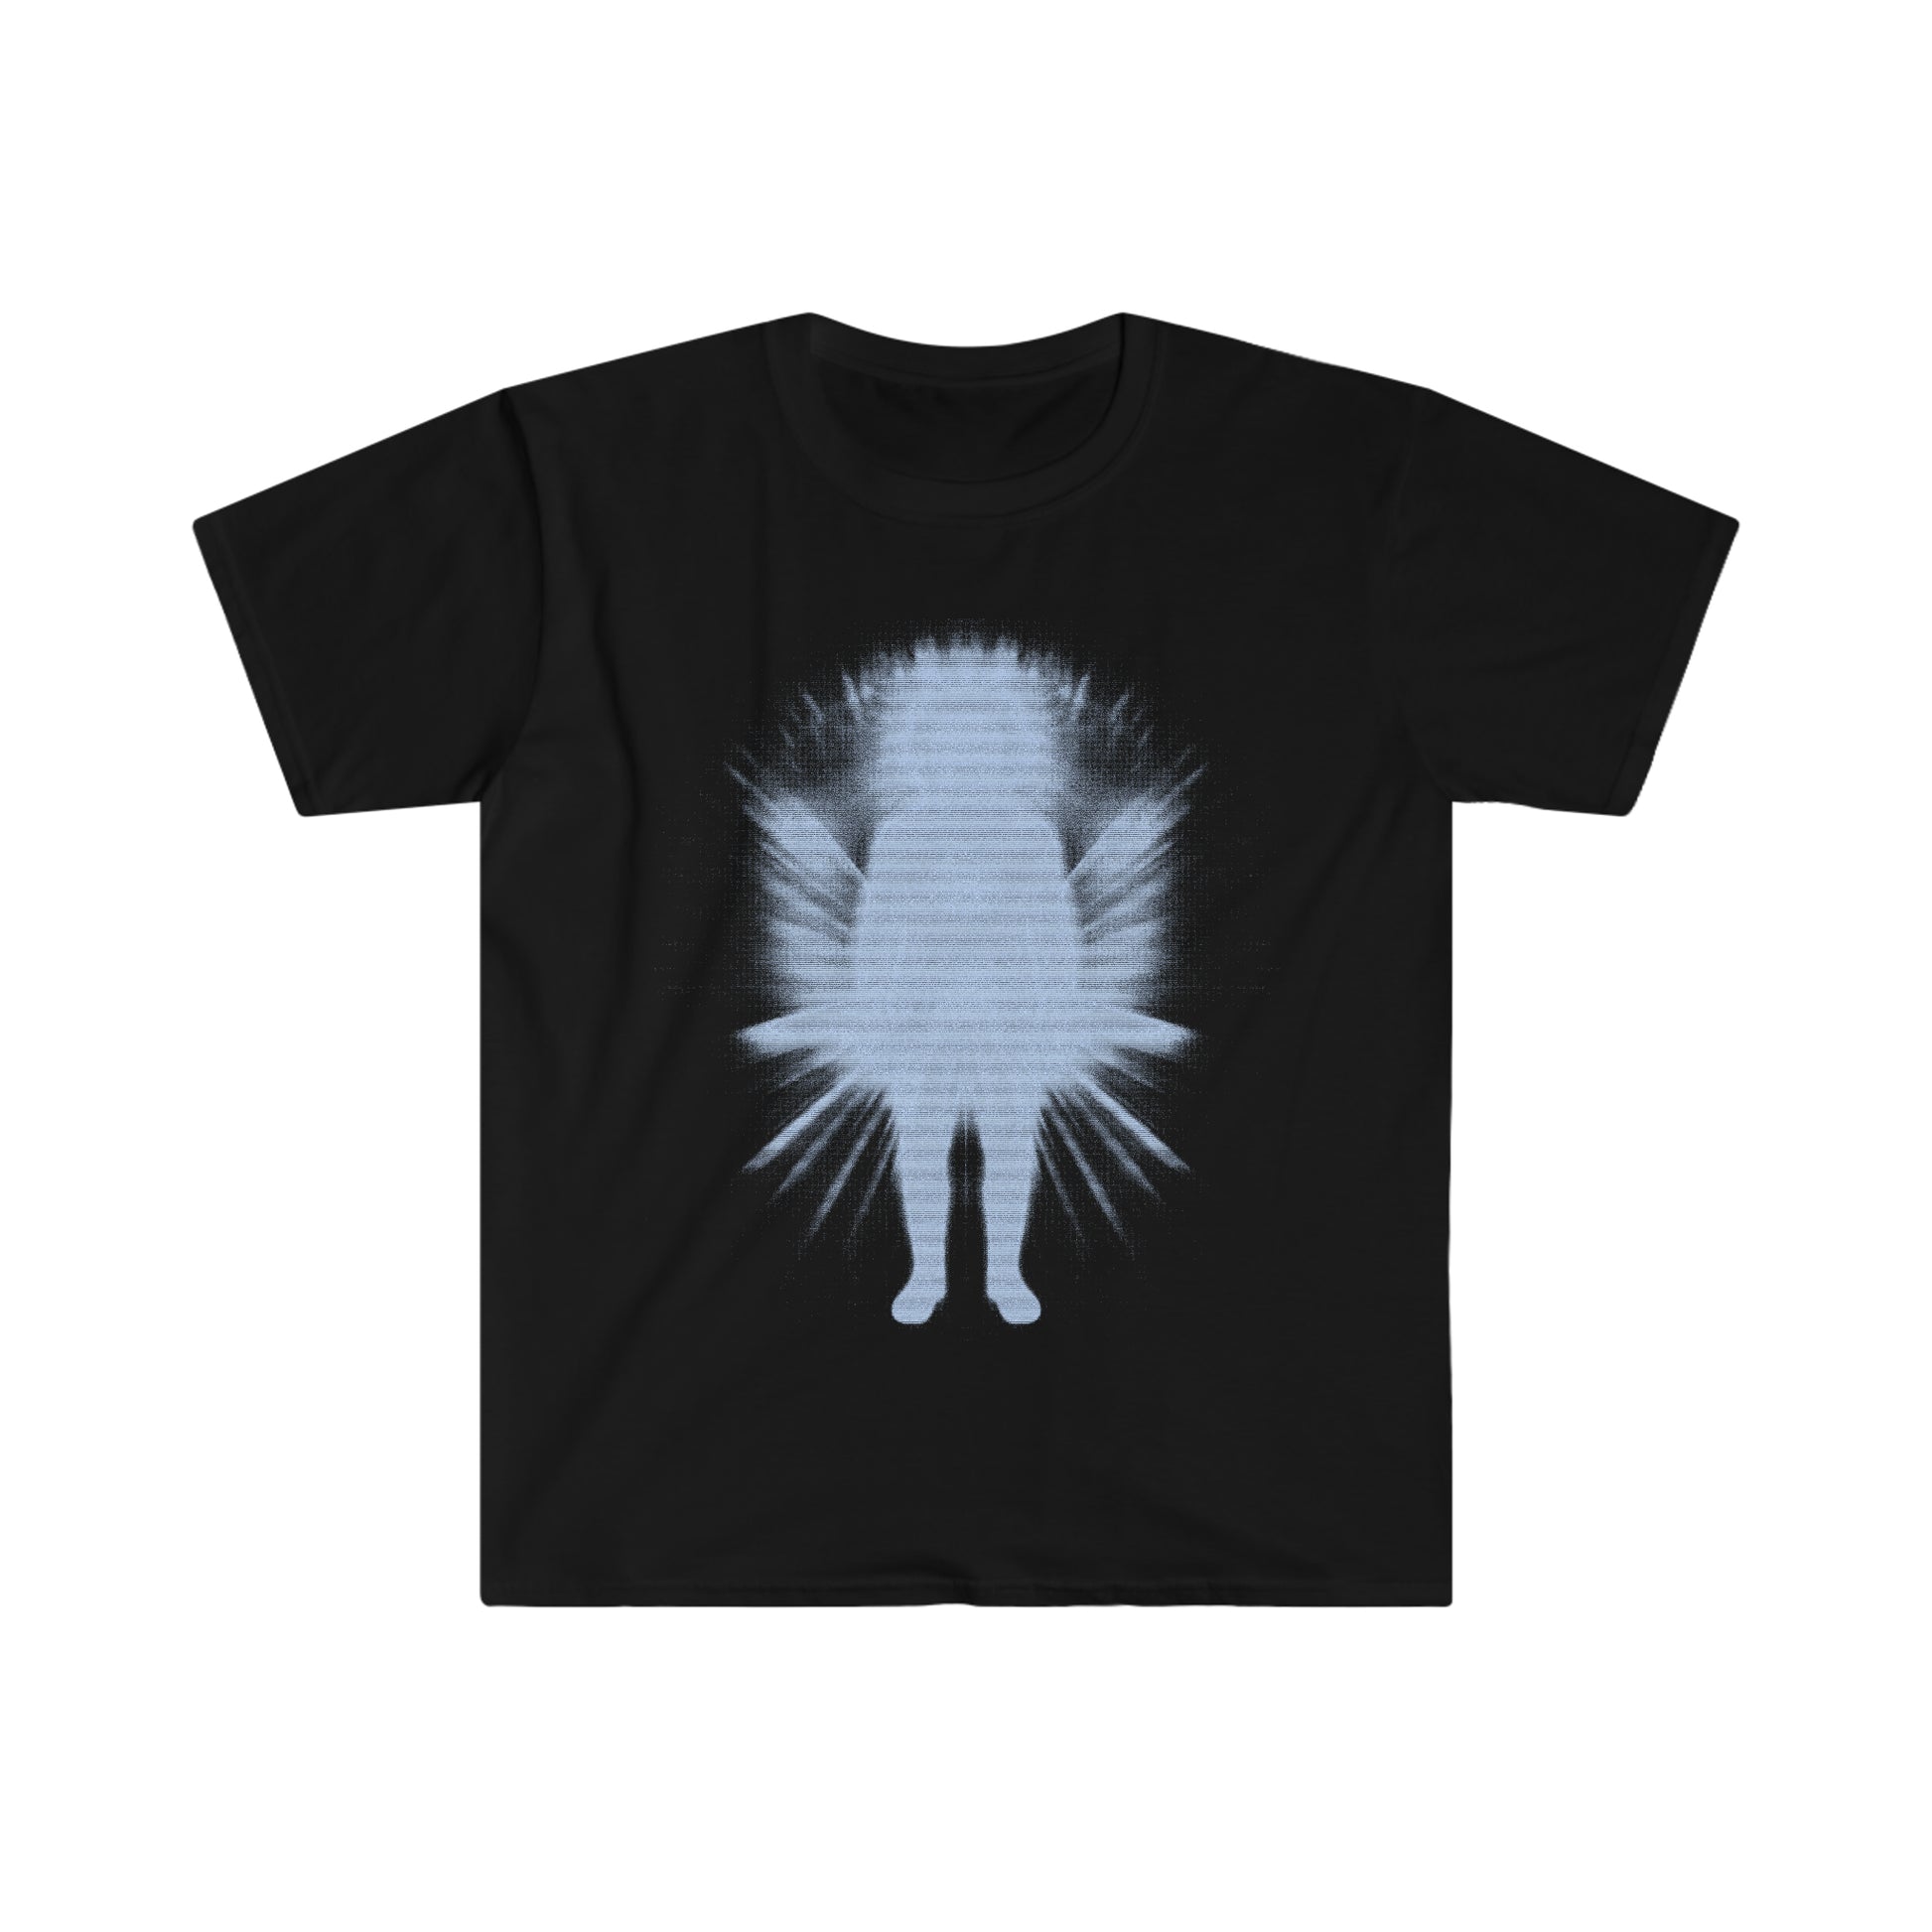 Goth Y2k Clothing Alt Aesthetic Goth Punk T-Shirt